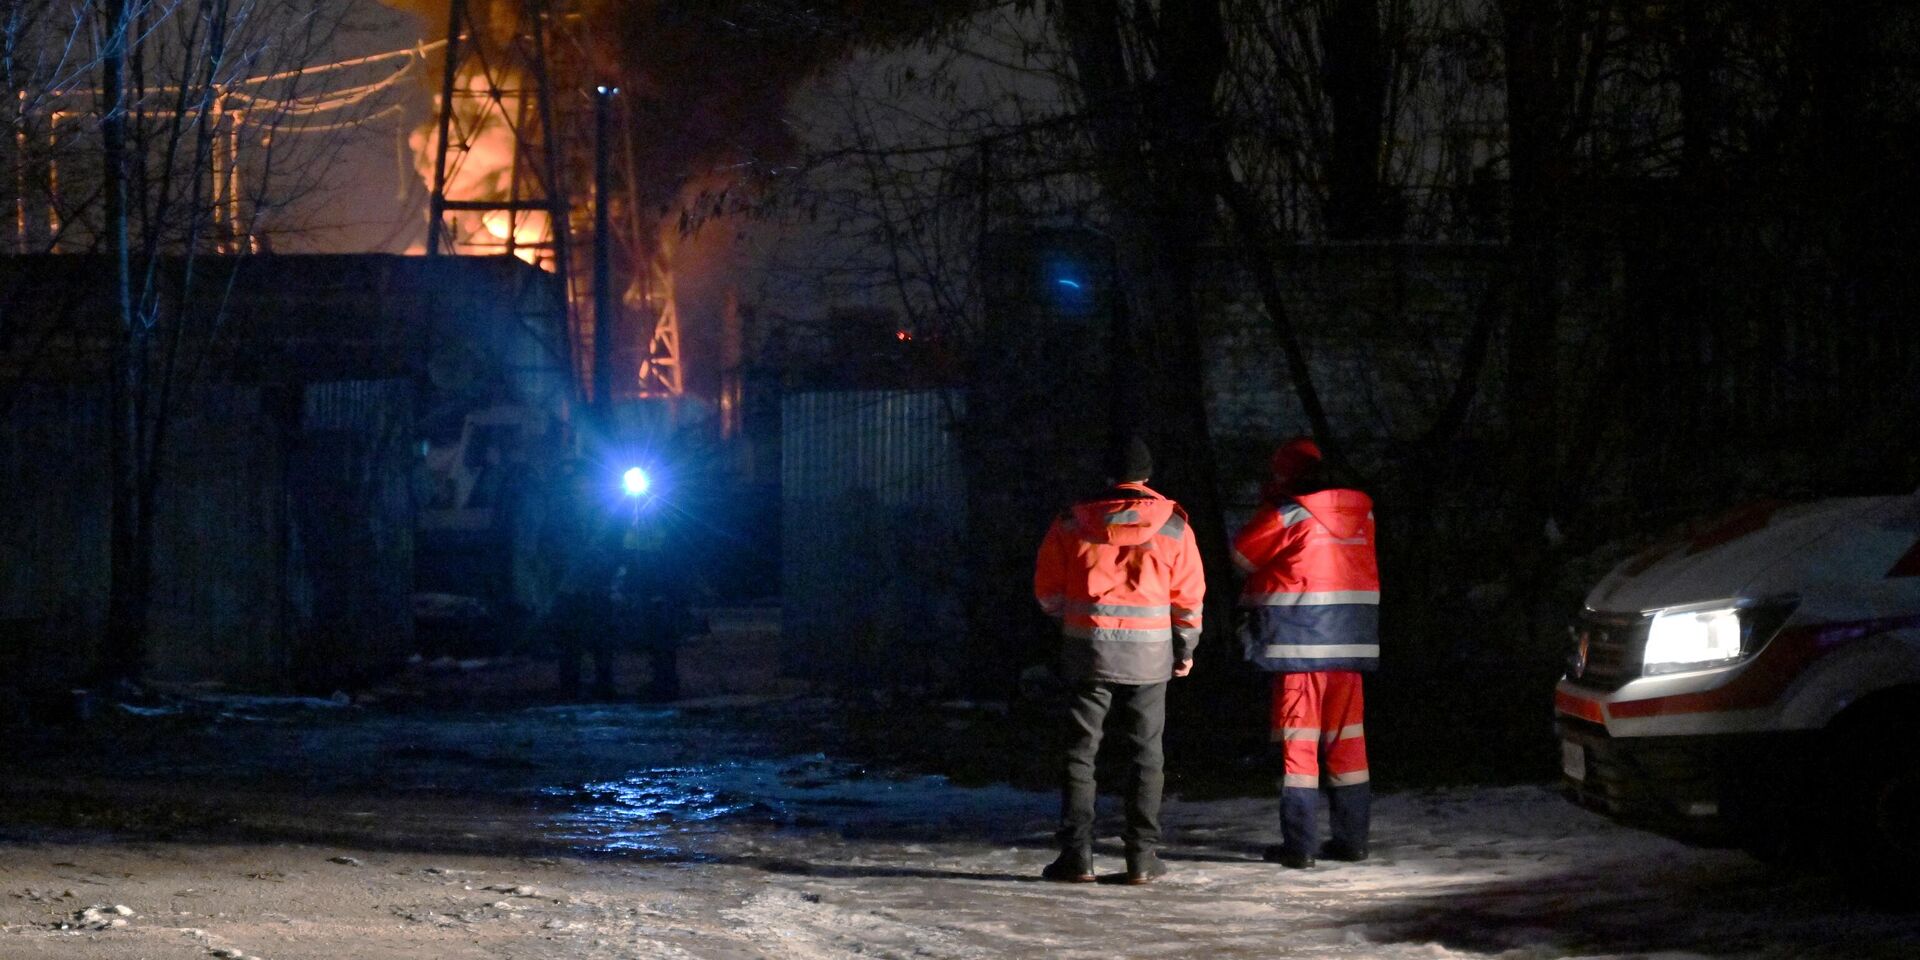 Спасатели на месте пожара на подстанции в Киеве, Украина. 19 декабря 2022 года - ИноСМИ, 1920, 19.12.2022